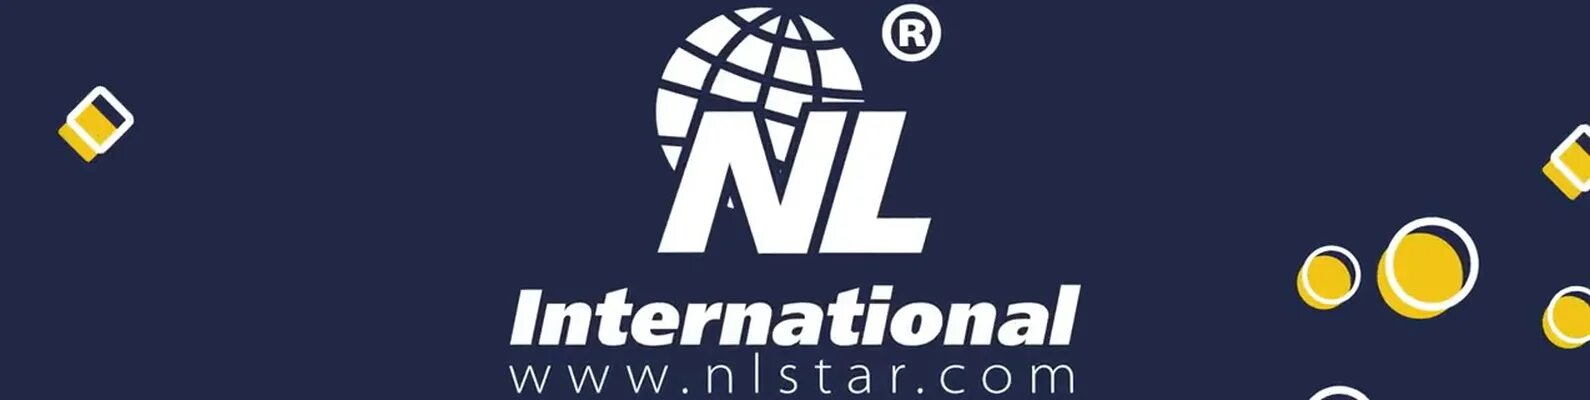 Нл интернешнл вход. Интернешнл логотип. Nl International. Логотип НЛ. Nl International картинки.